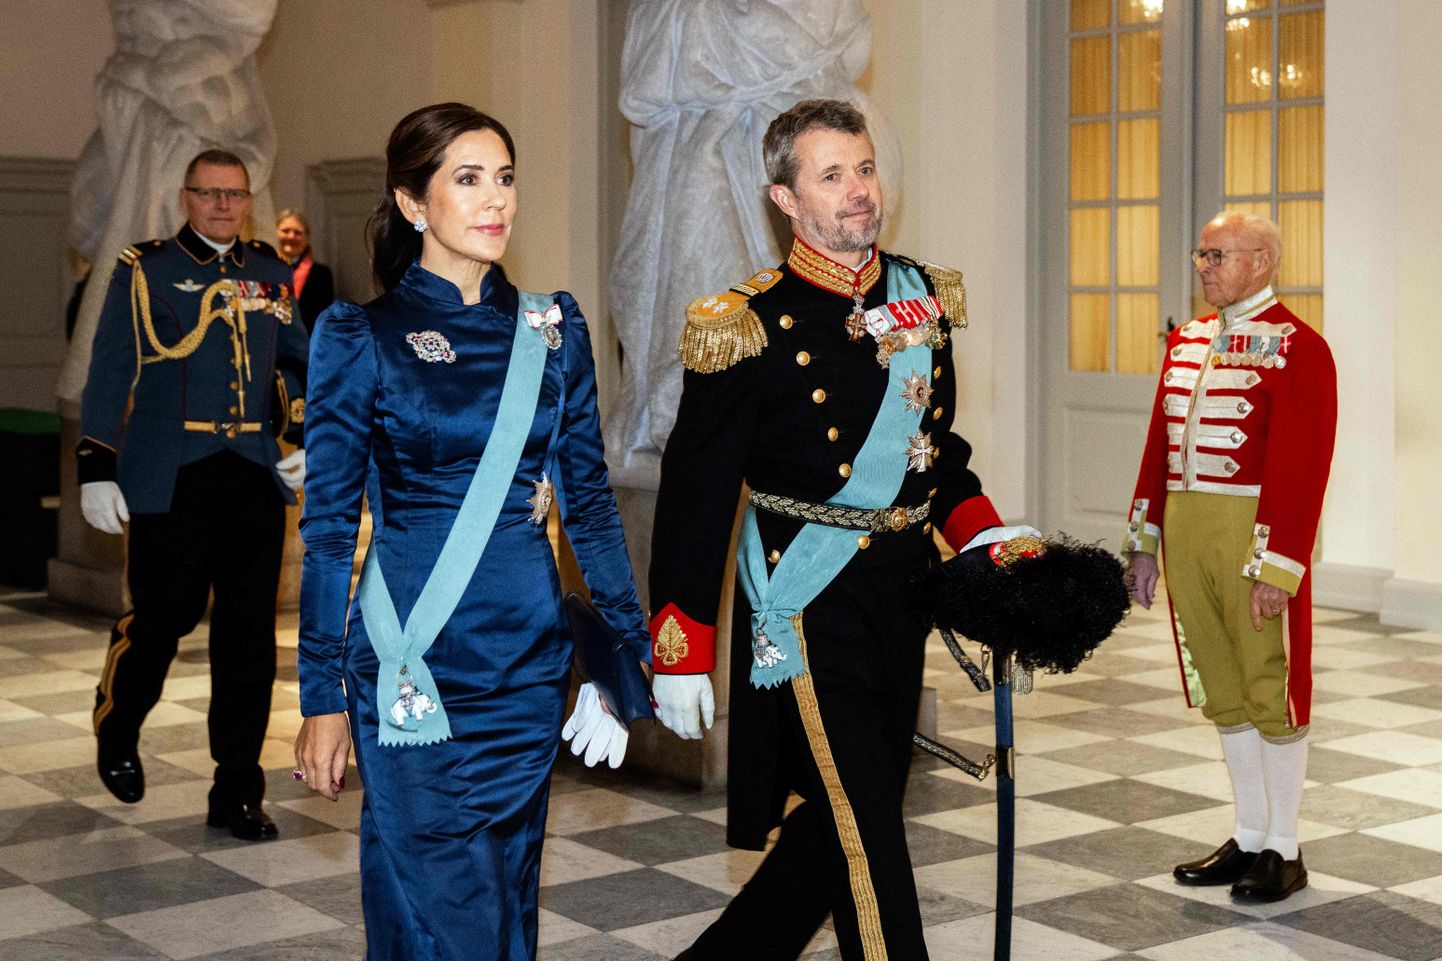 Taani kroonprints Frederik ja kroonprintsess Mary 3. jaanuaril 2024 Kopenhaagenis Christiansborgi palees diplomaatilisele korpusele korraldatud uusaastavastuvõtul.